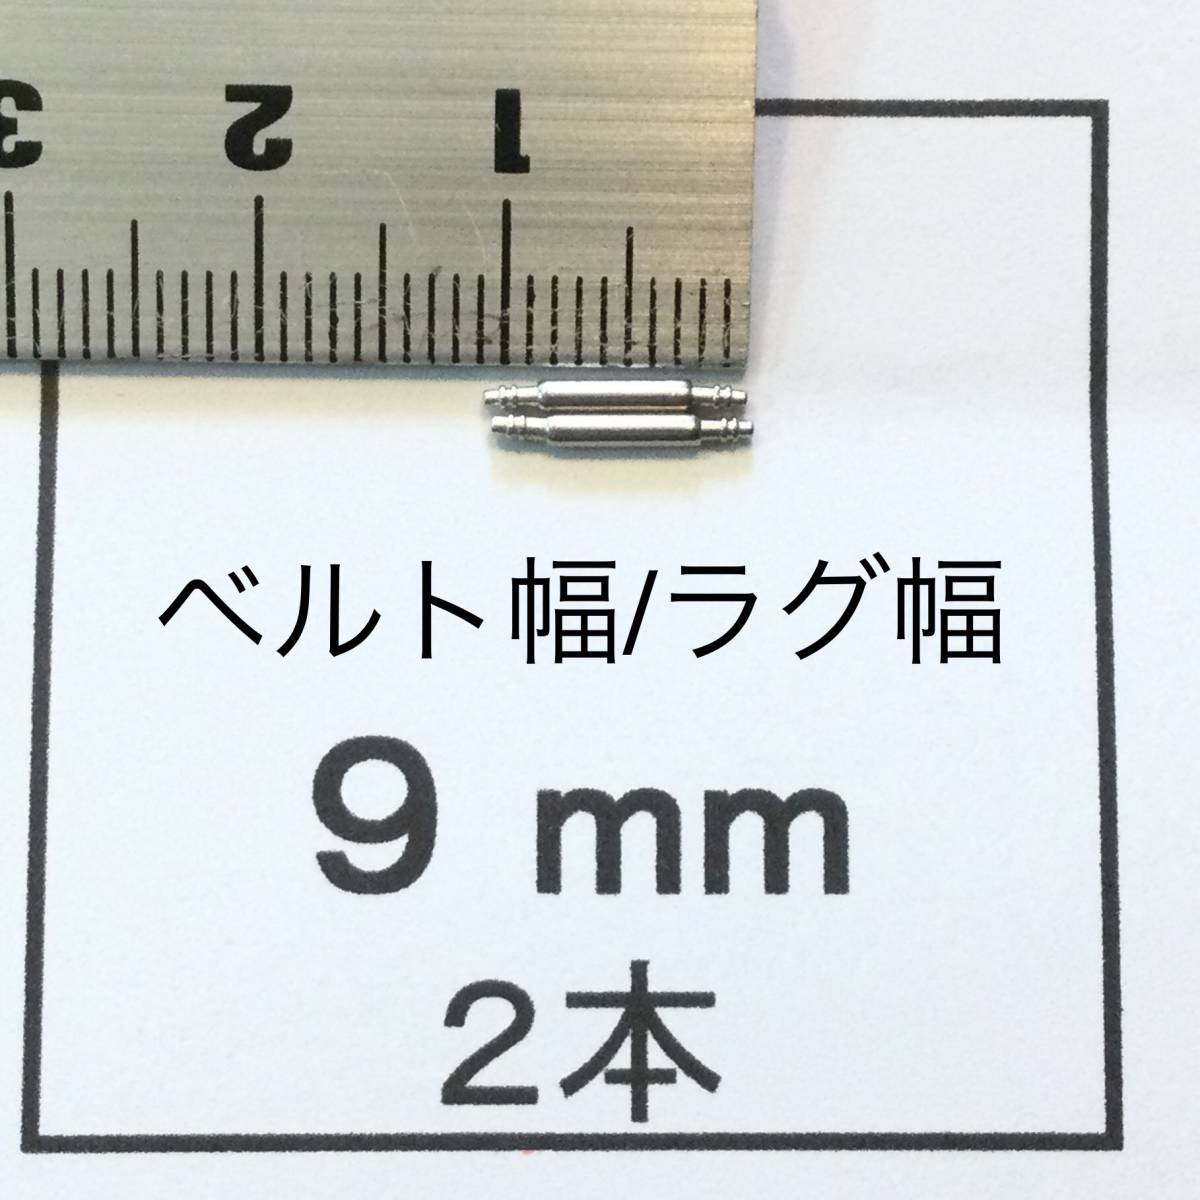  наручные часы spring палка spring палка 2 шт 9mm для 60 иен стоимость доставки 63 иен быстрое решение немедленная отправка изображение 3 листов y